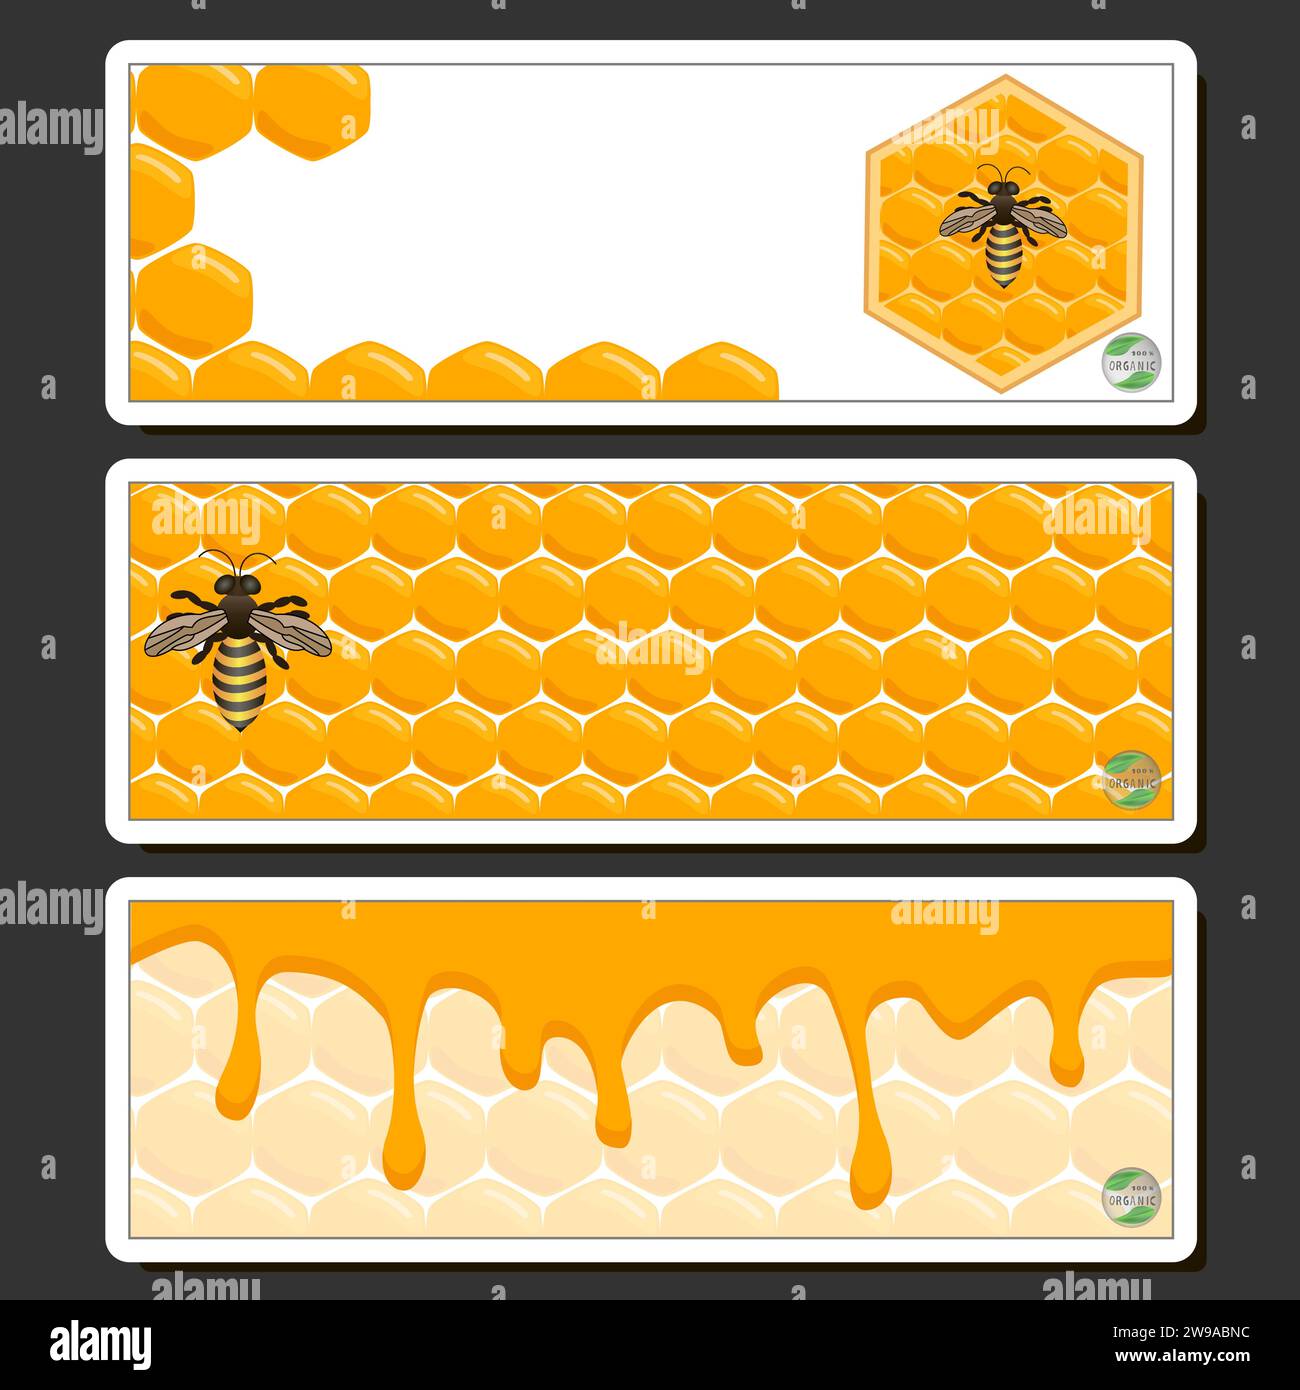 Goccia di miele di ape gocciola da honeycombs esagonali riempito con nettare dorato, honeycombs composizione estiva costituito da goccia di miele naturale, gocciola su wa Illustrazione Vettoriale